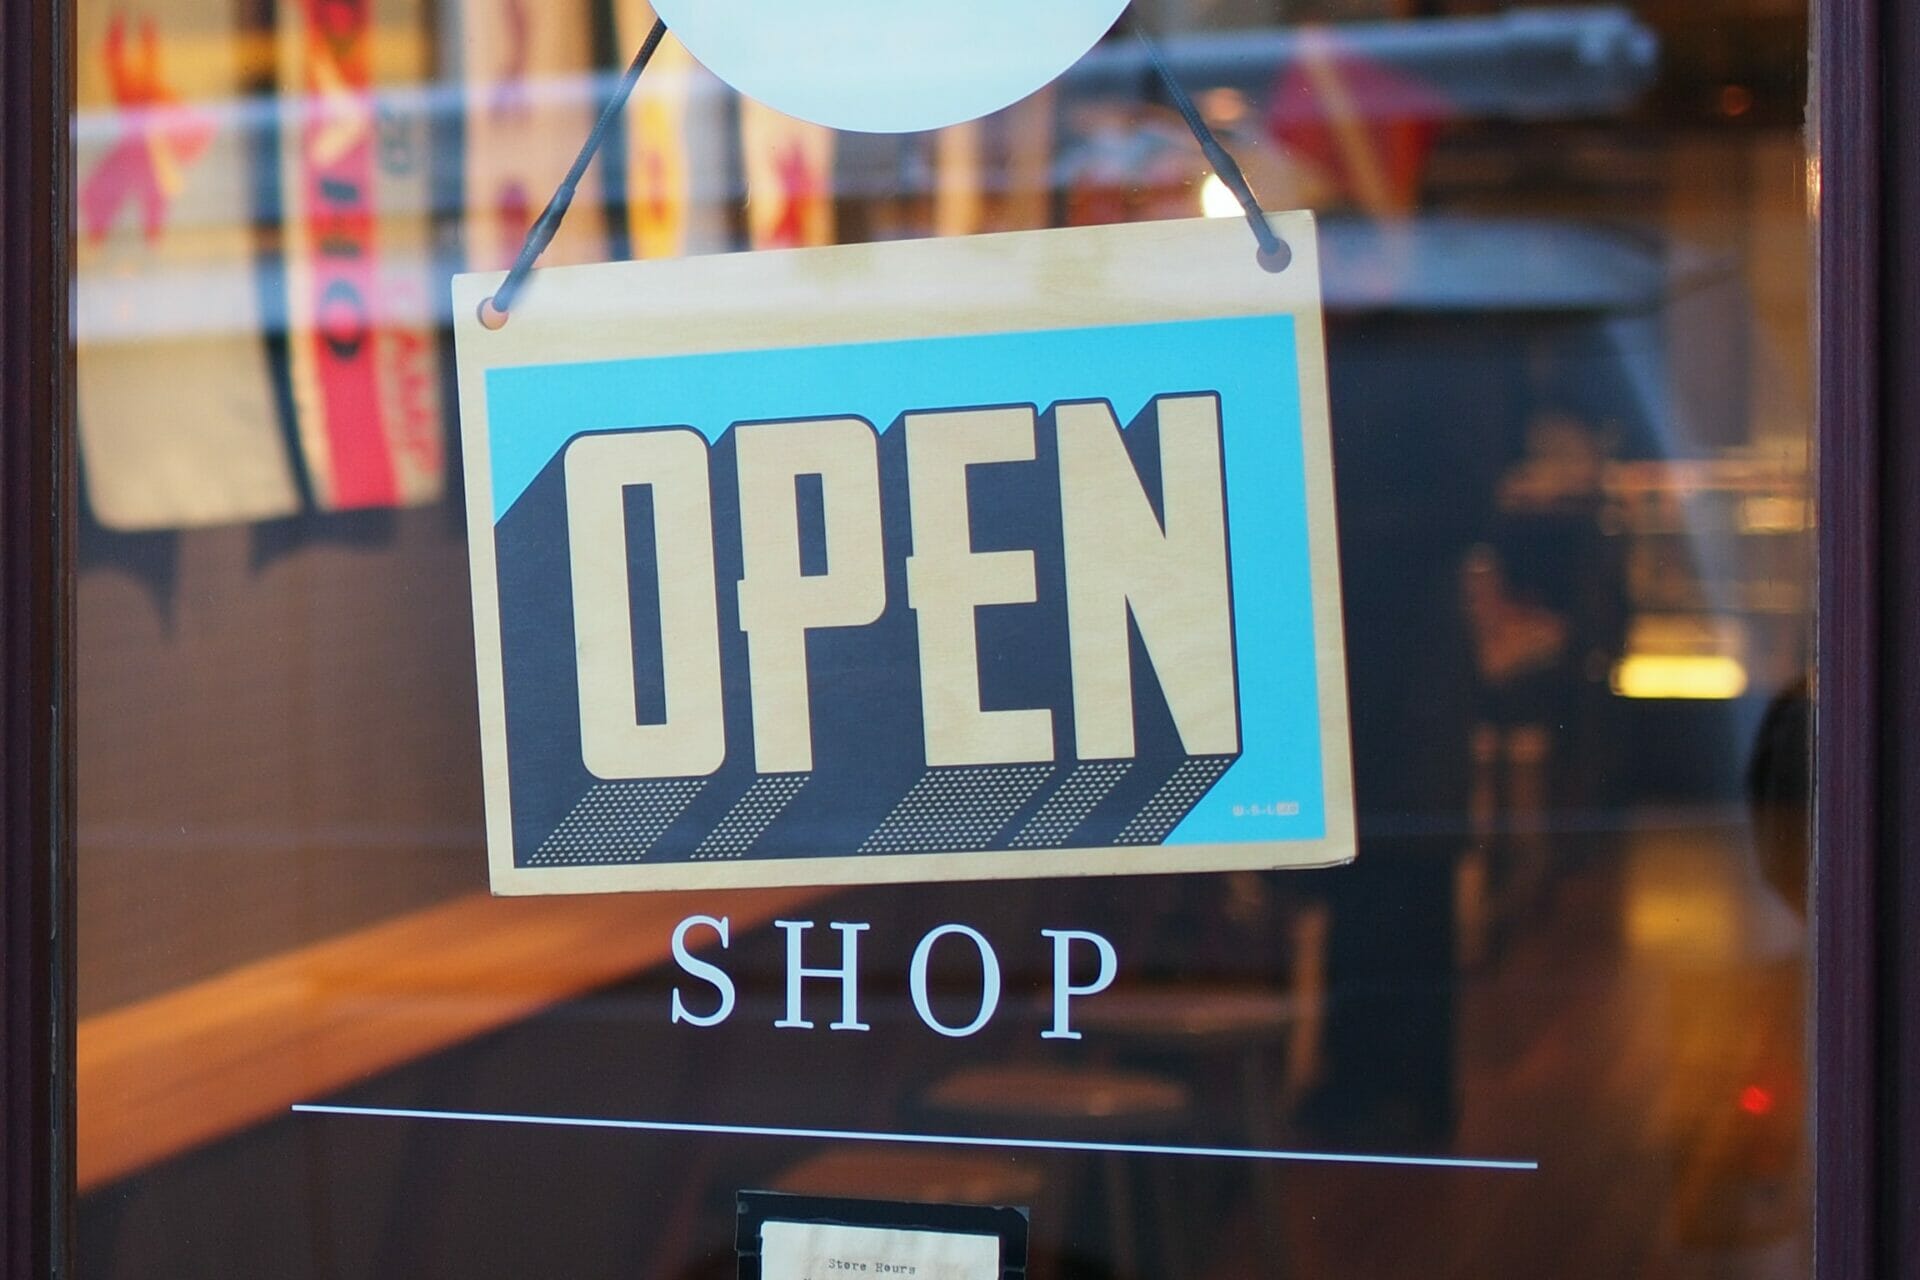 Een winkeldeur met daarop een bord met de tekst "open".